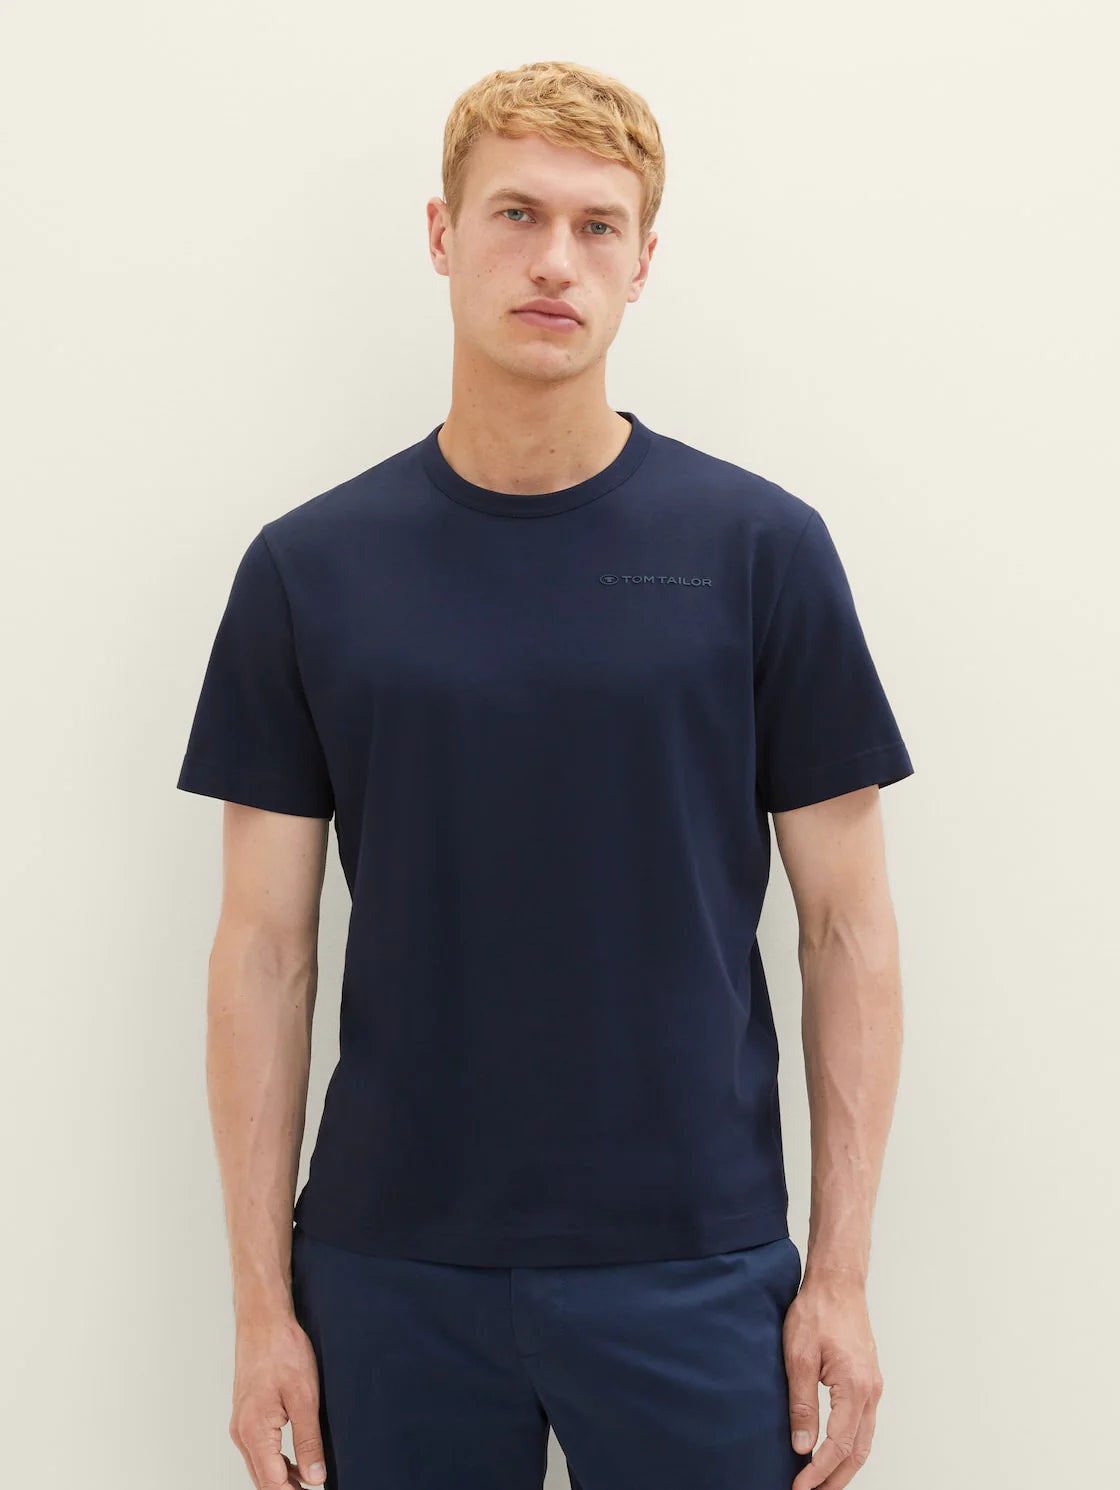 Tom Tailor Navy Basic T-Shirt